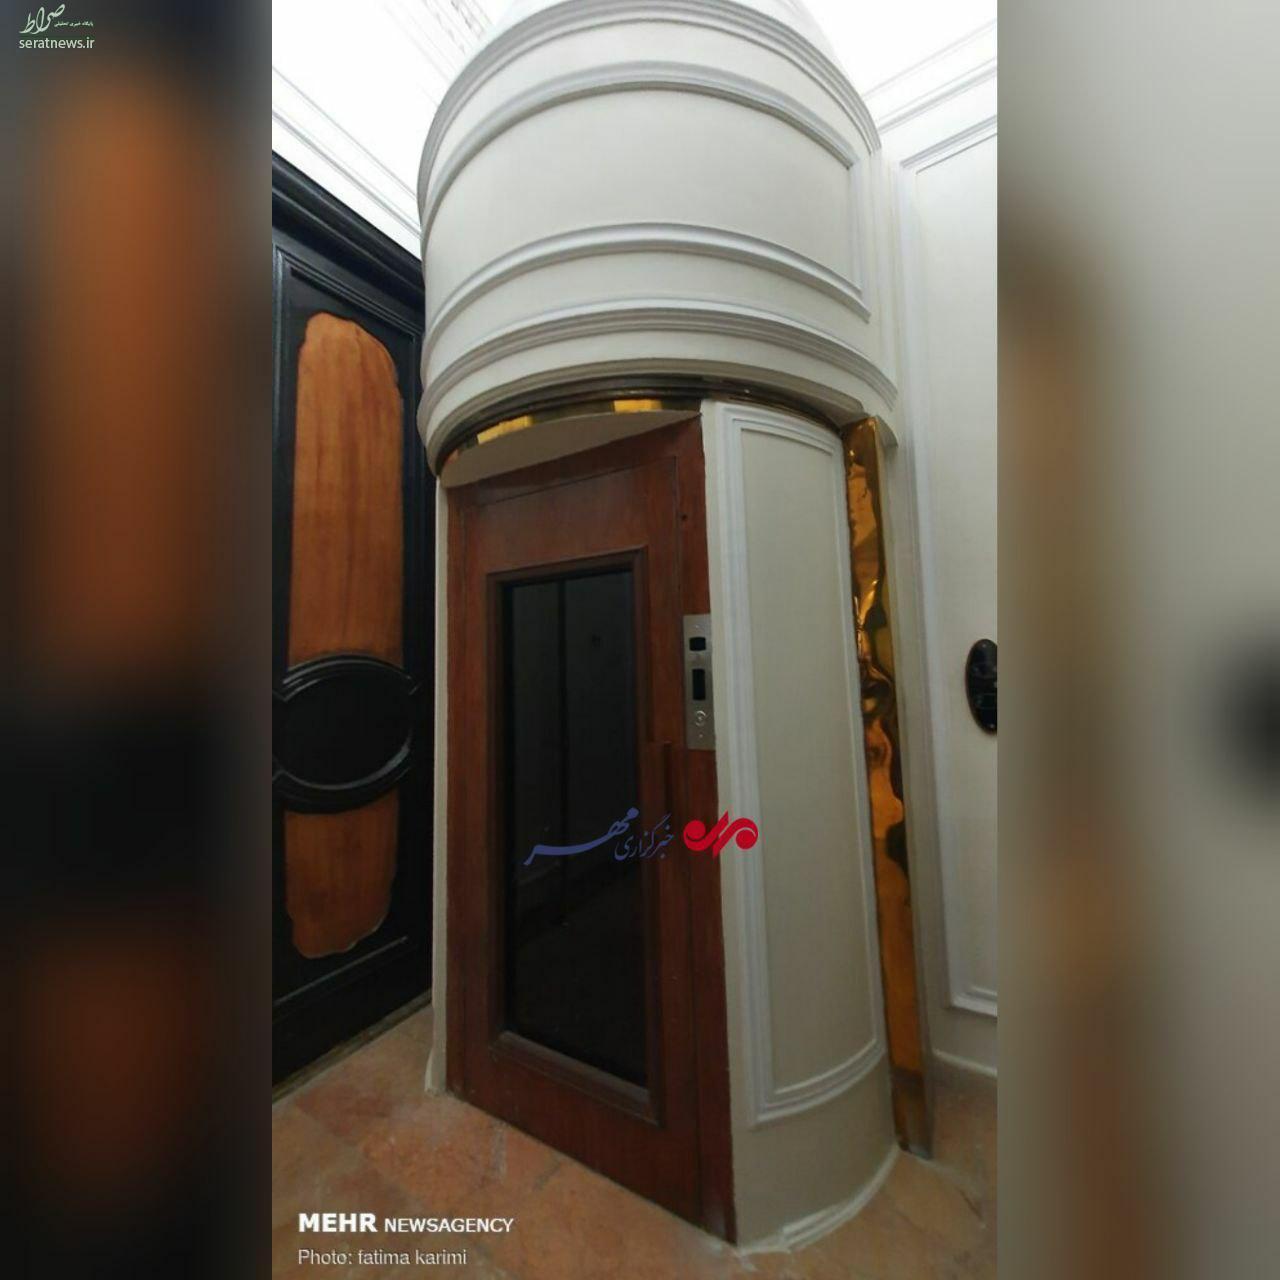 عکس/ تصویر دیده نشده از آسانسور تعبیه شده در کاخ مرمر